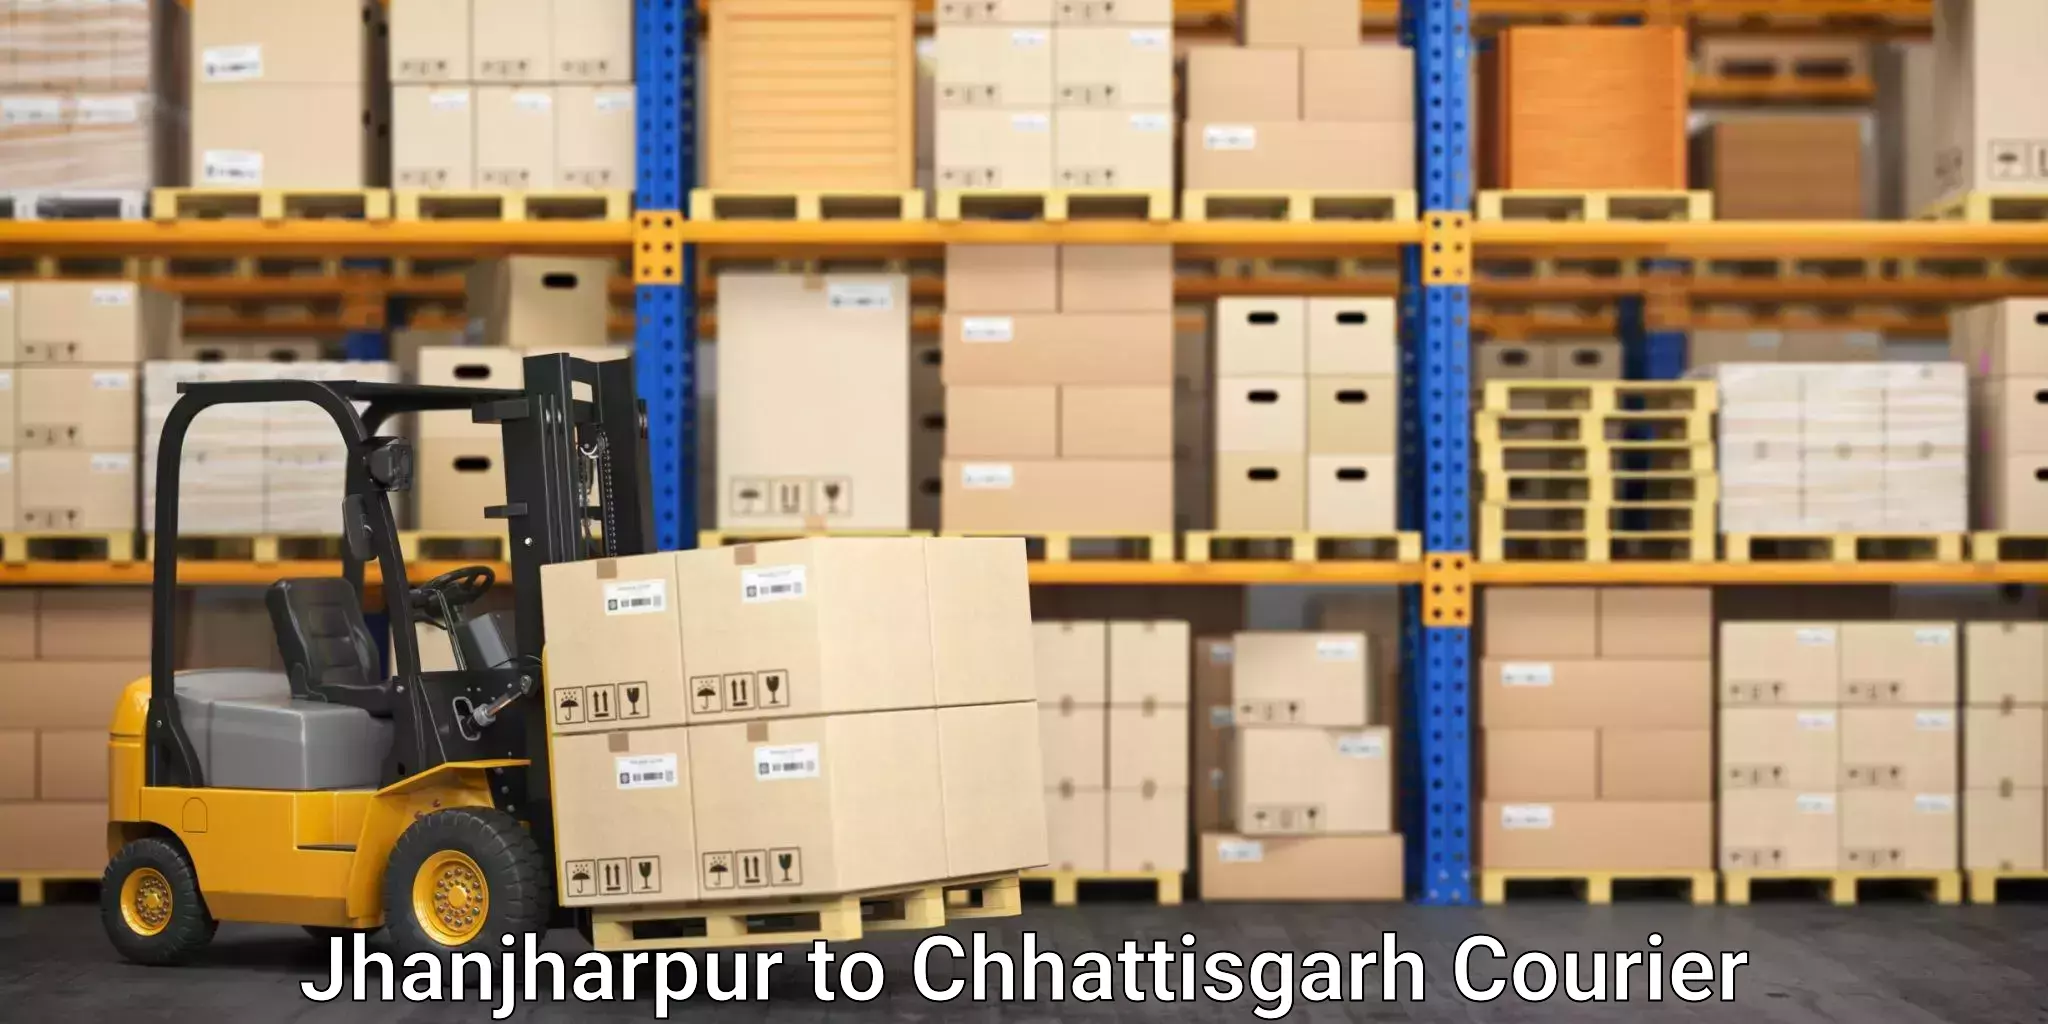 Furniture relocation services Jhanjharpur to Chhattisgarh